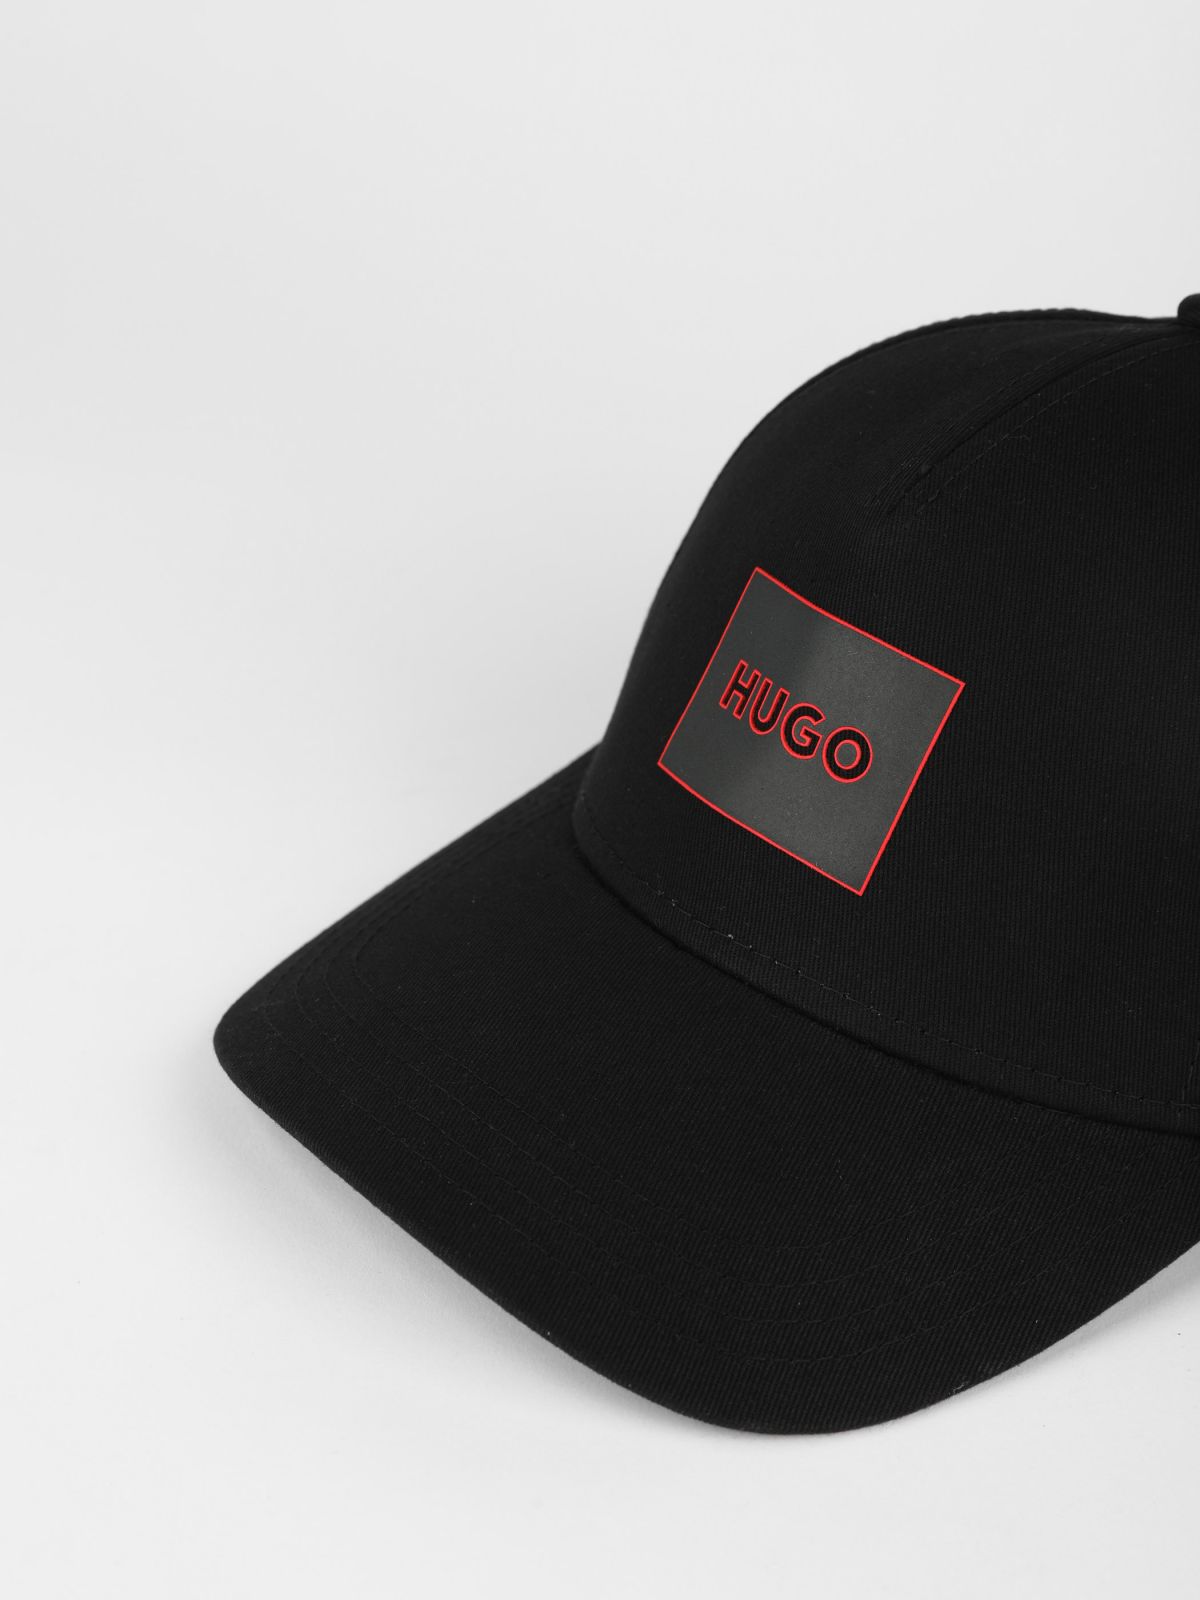  כובע מצחייה עם פאץ' לוגו של HUGO BOSS